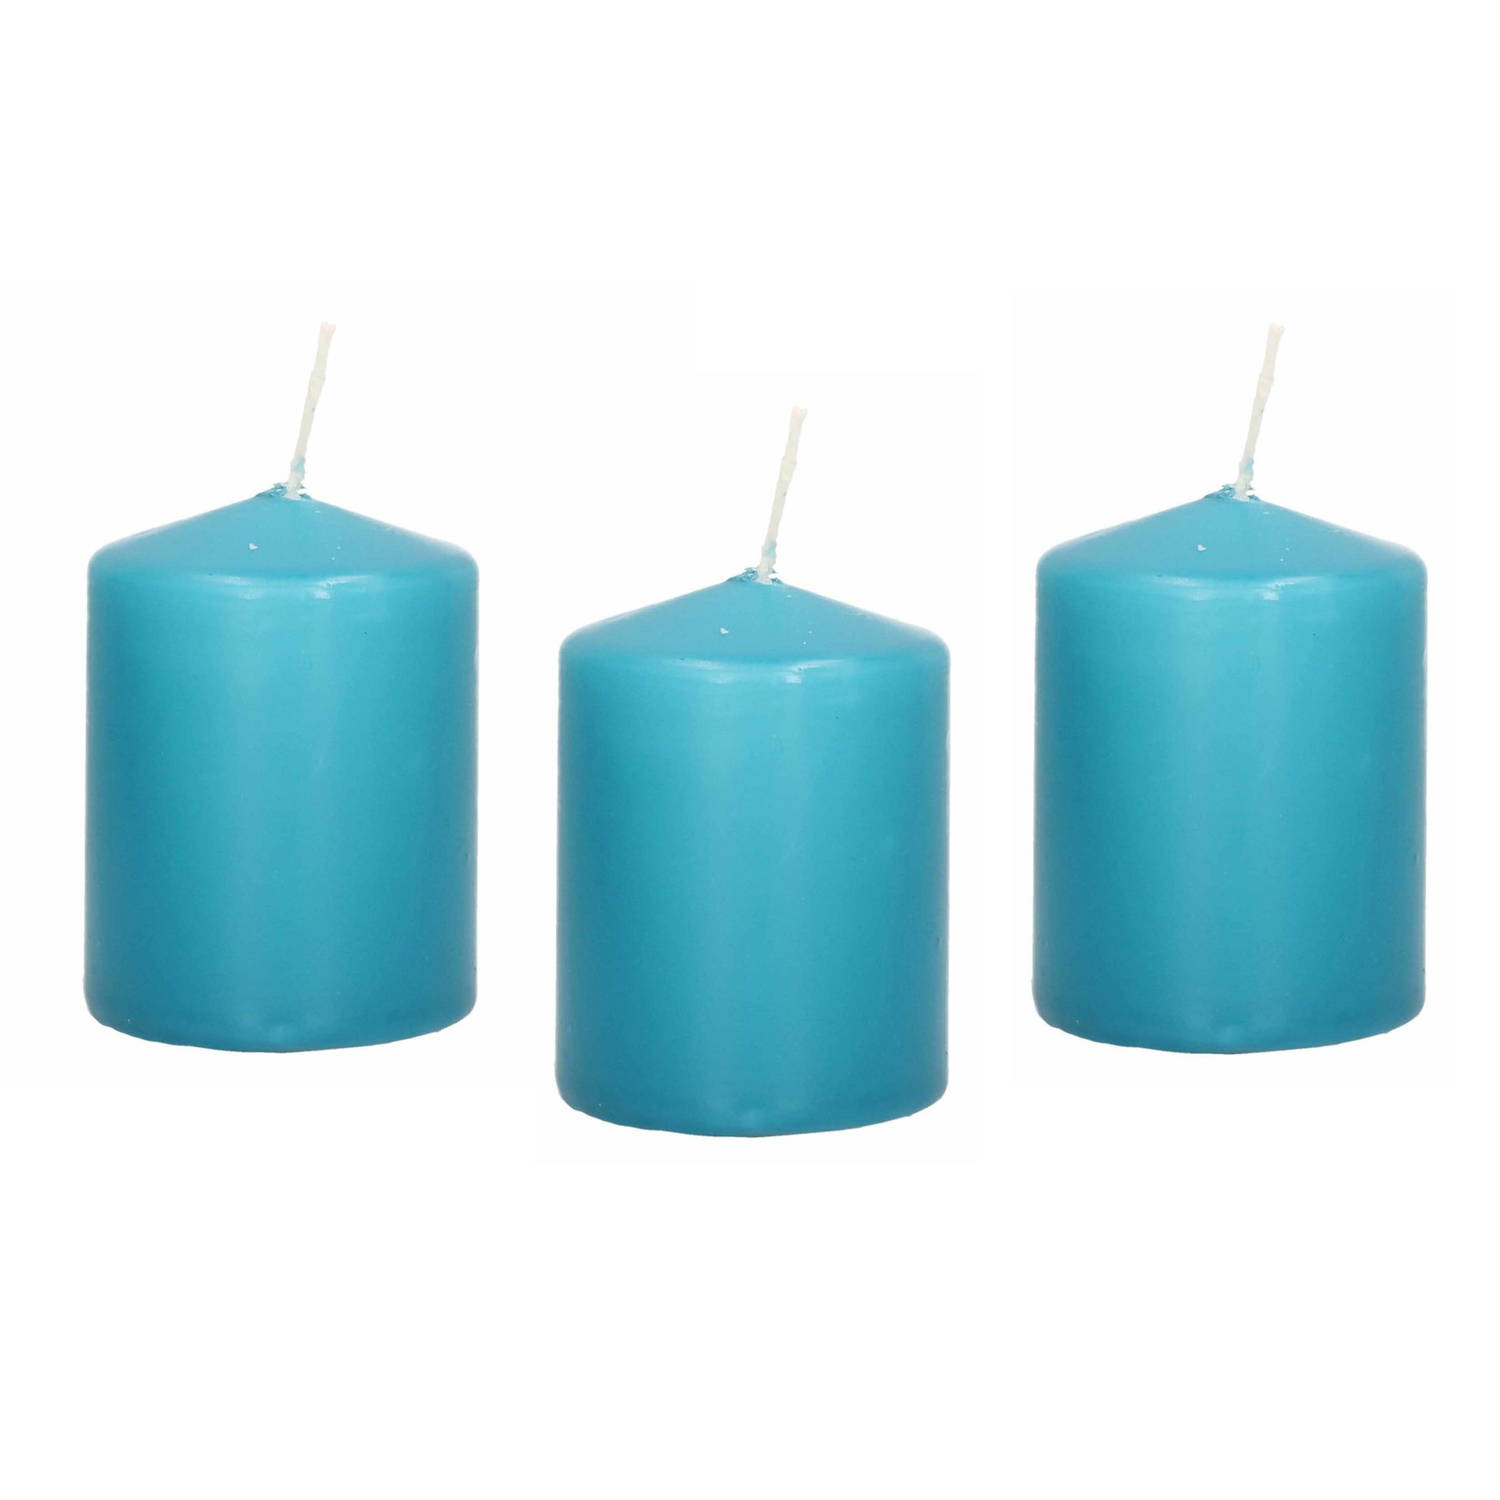 8x Turquoise Blauwe Cilinderkaarsen-stompkaarsen 6 X 8 Cm 29 Branduren Stompkaarsen